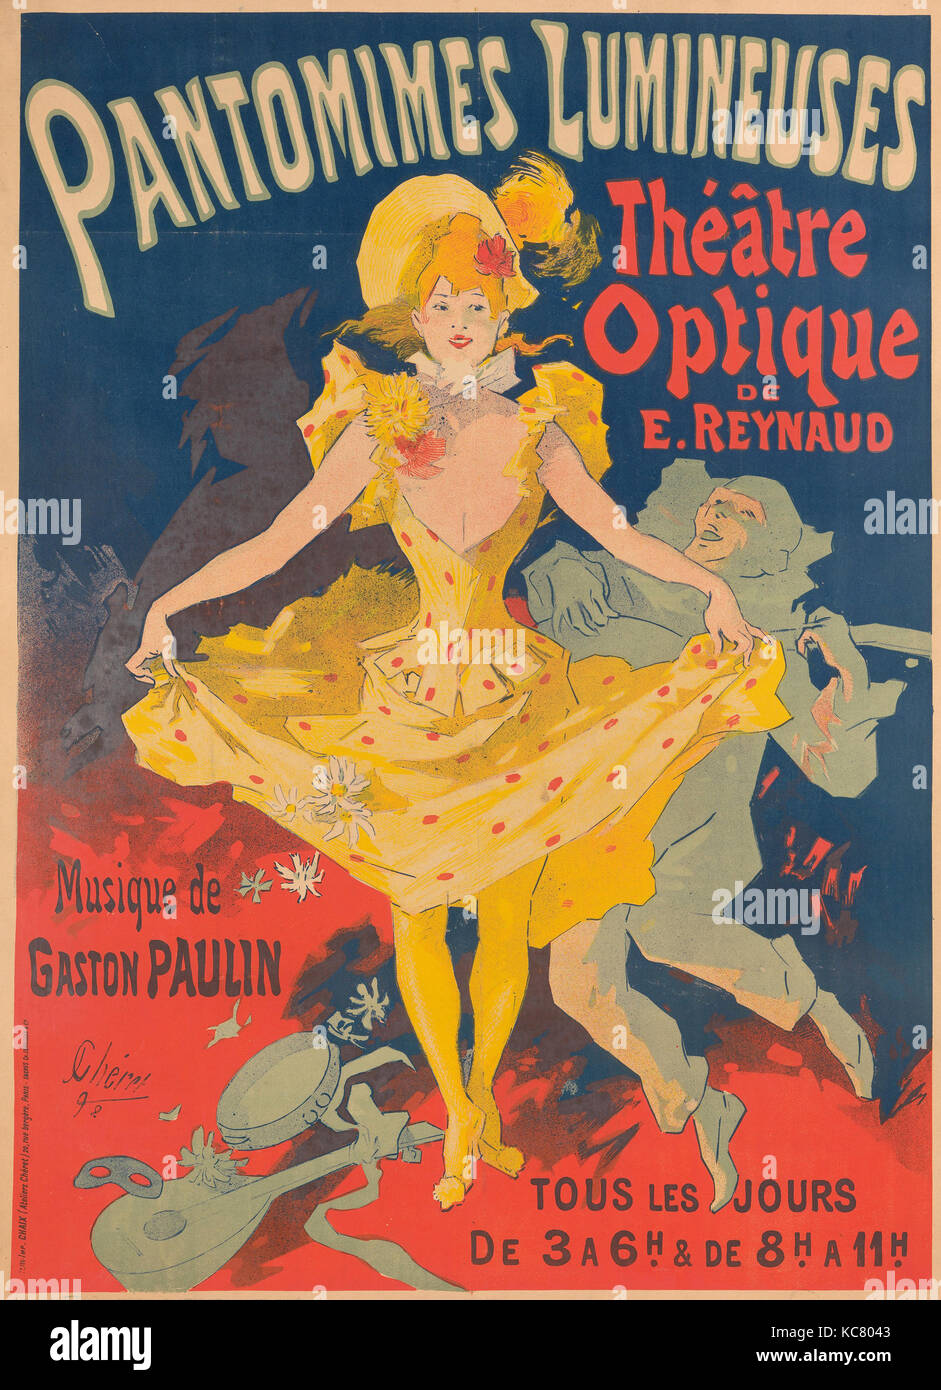 Drawings and Prints, Poster, Musée Grévin, Pantomimes Lumineuses, Théâtre optique de E. Reynaud, musique de Gaston Paulin Stock Photo